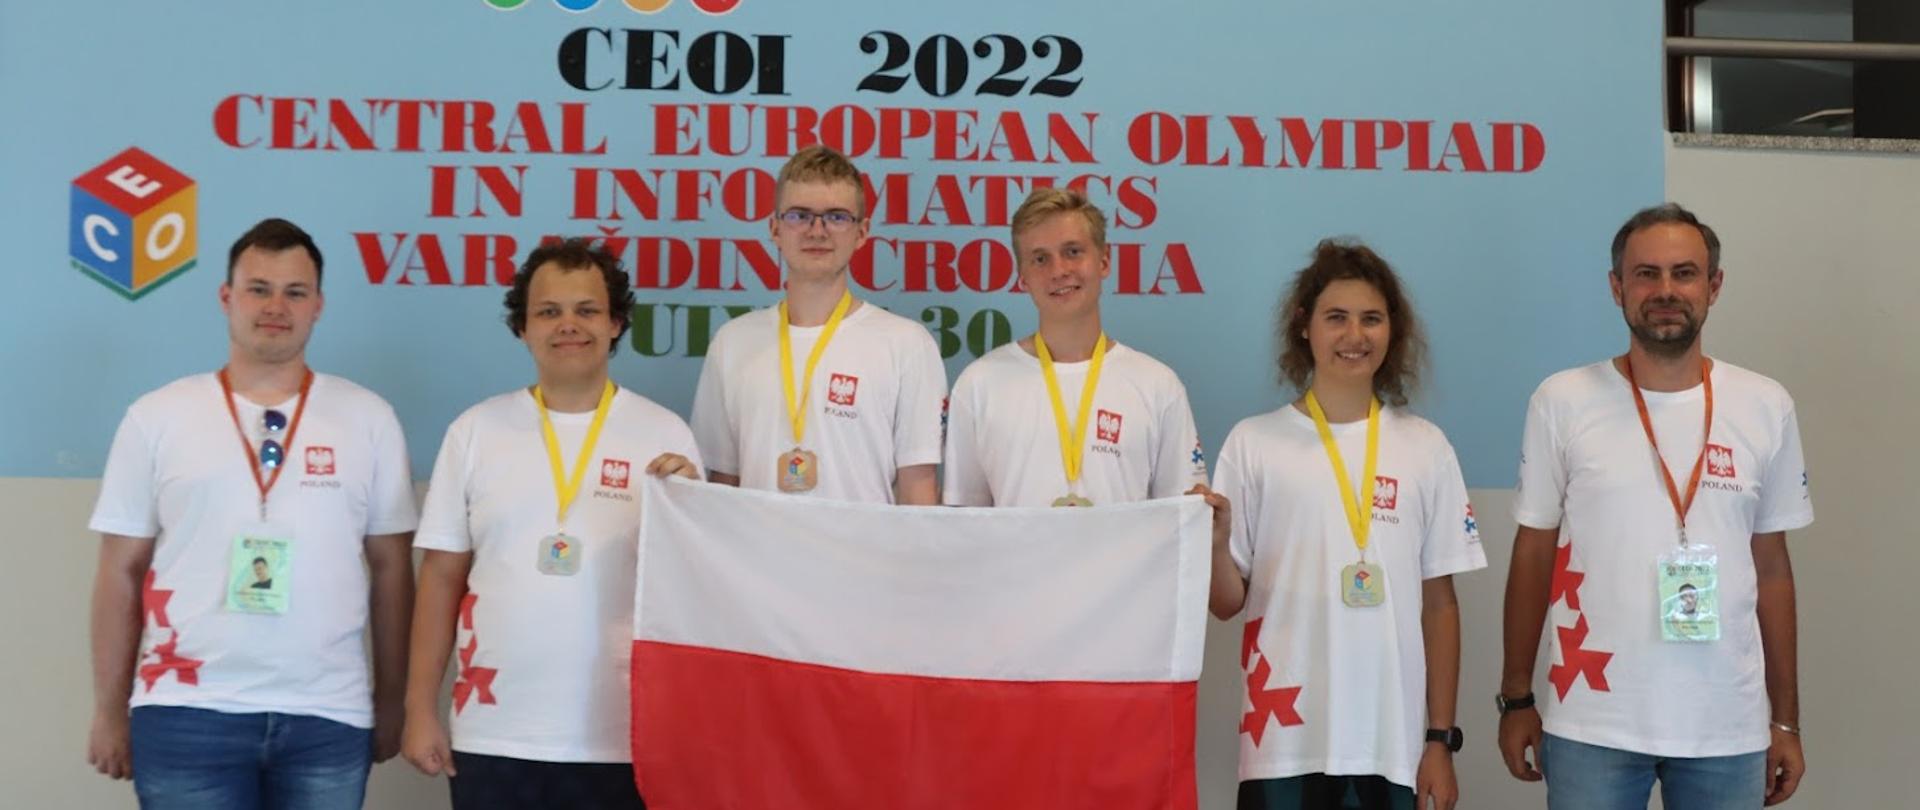 Sześcioro młodych ludzi stoi pod ścianą z napisem CEOI 2022, dwaj trzymają polską flagę.